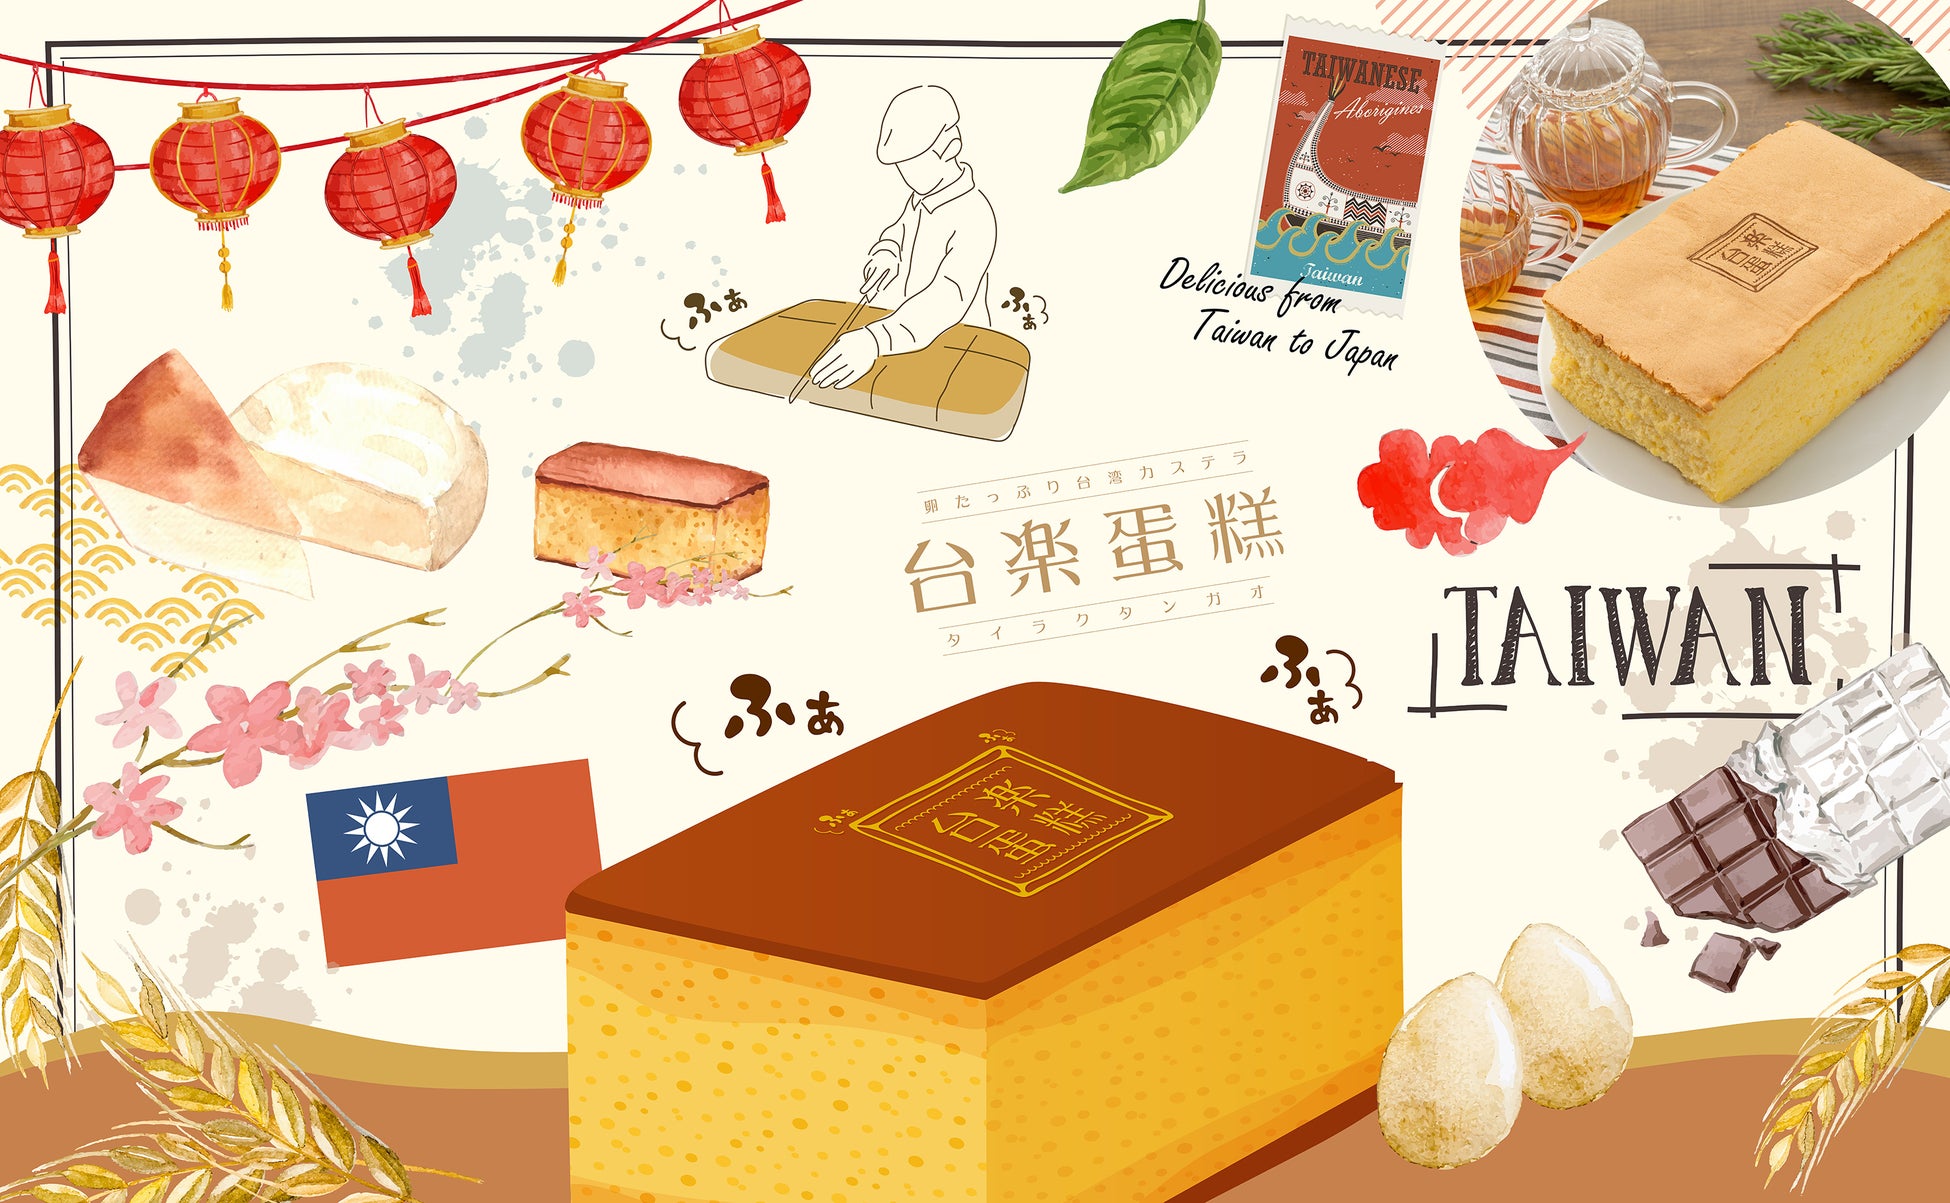 日本の高品質な素材で 本場の製法そのまま再現 “ふわぁしゅぁ”食感　行列必須の大人気・台湾カステラが相模大野で買える！